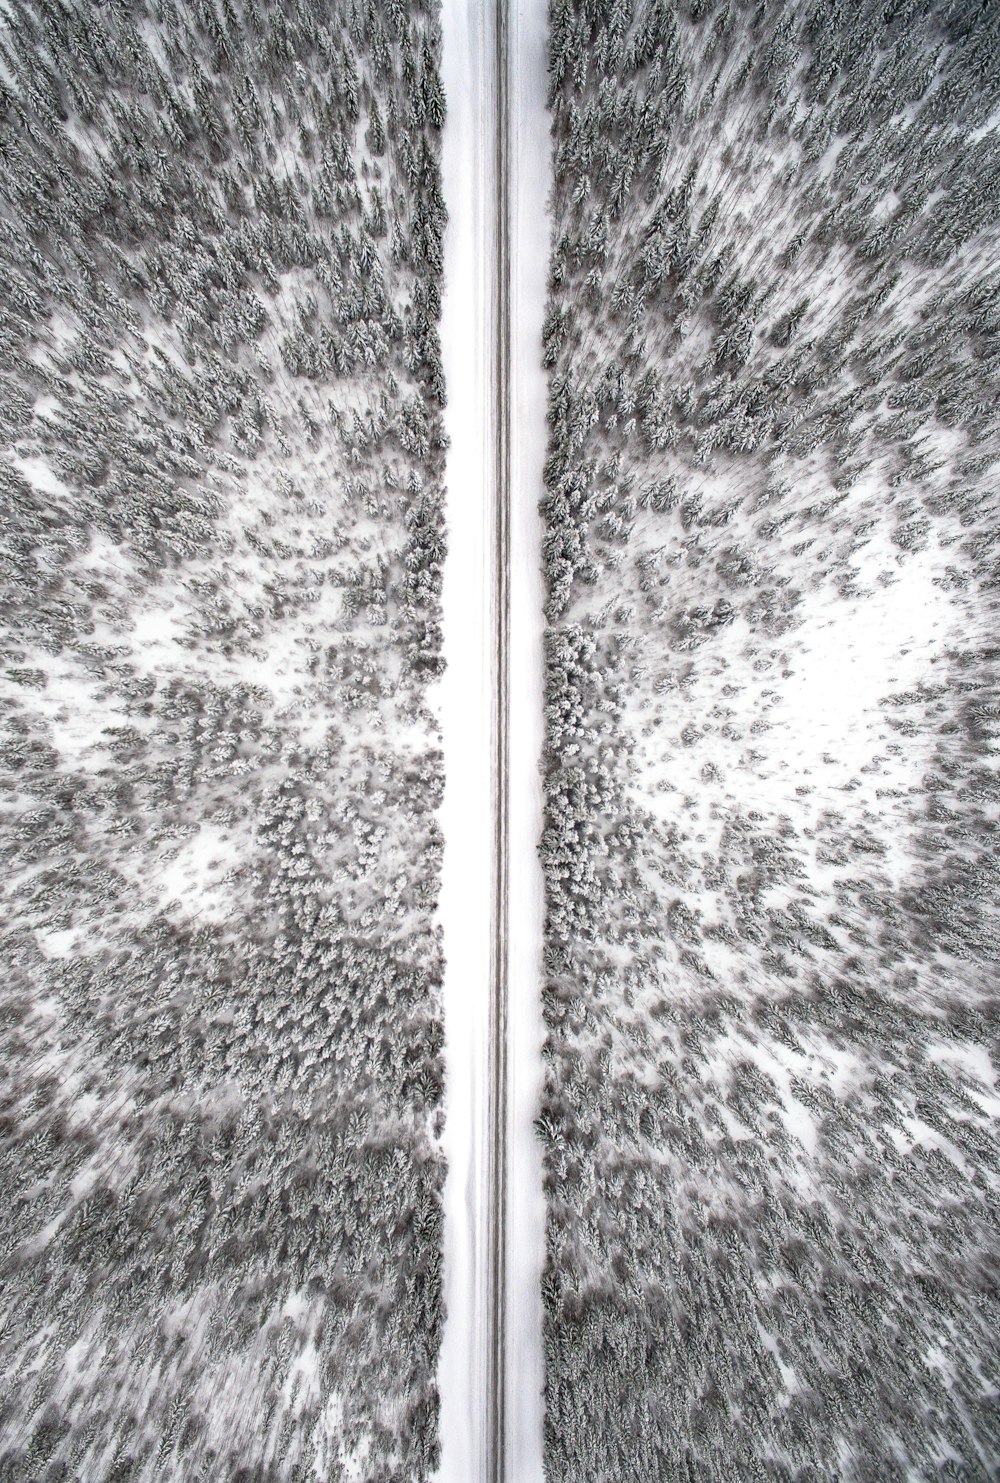 Fotografía aérea de un terreno nevado